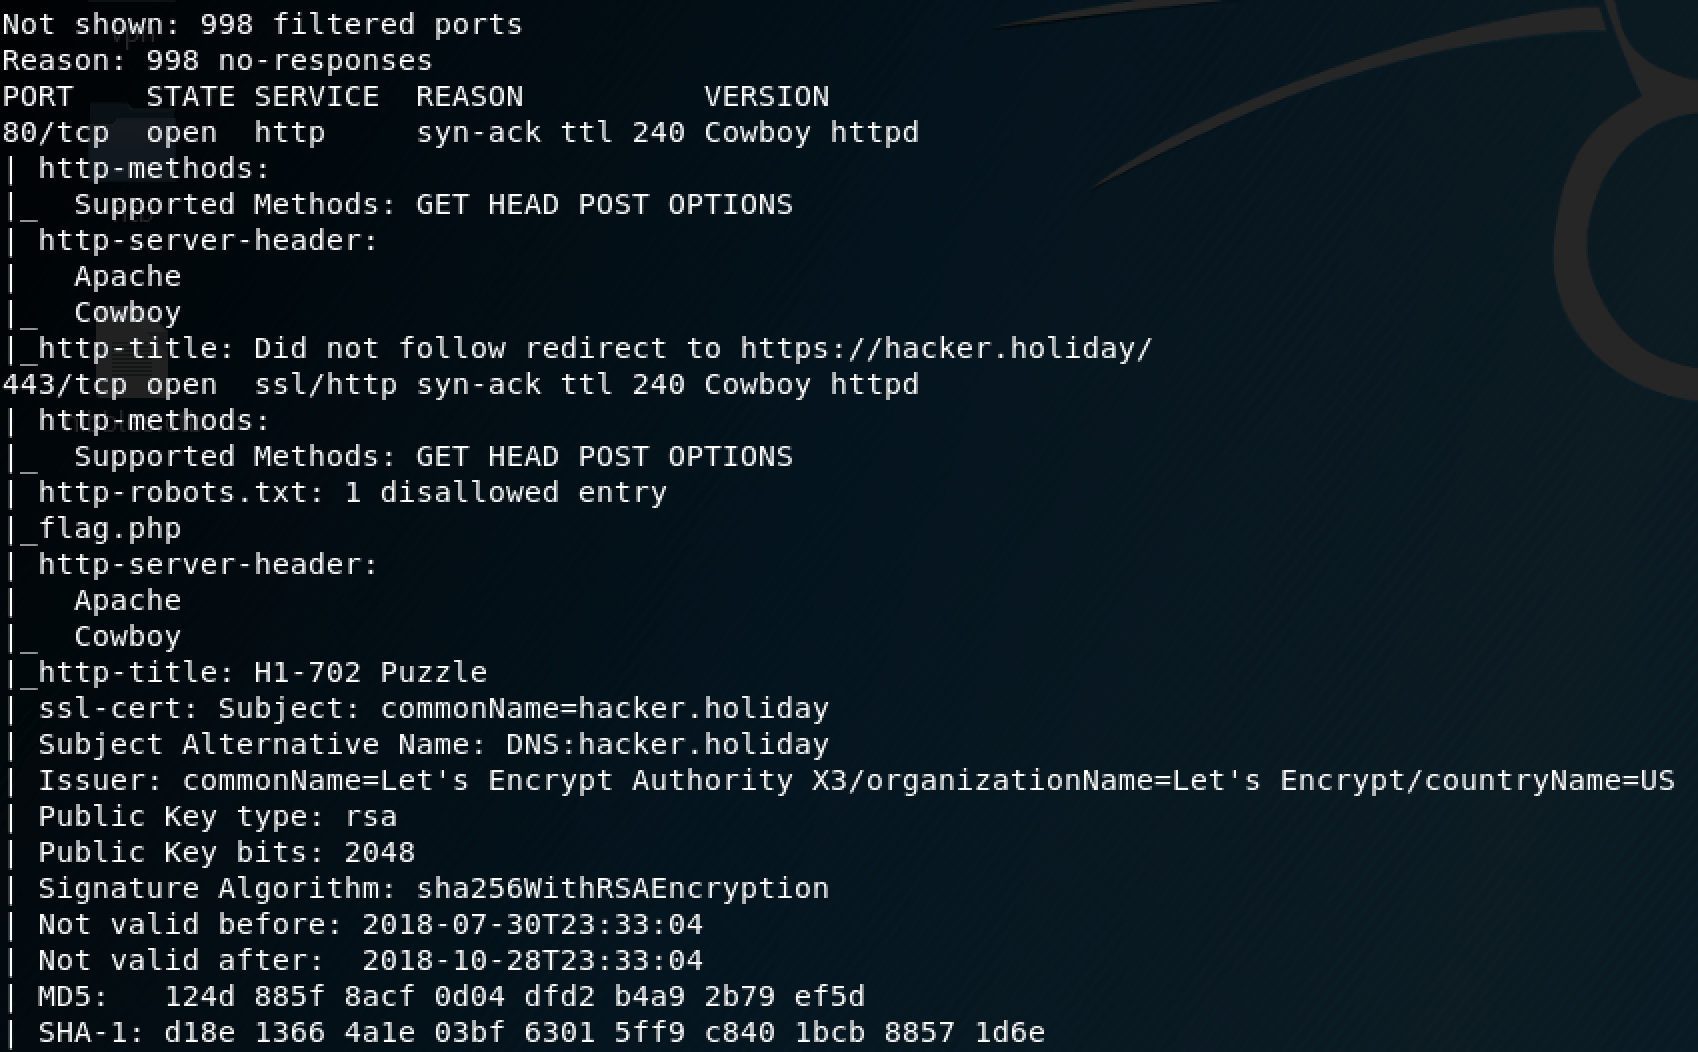 HackerOne - h1702 #HackerHoliday initial nmap scan